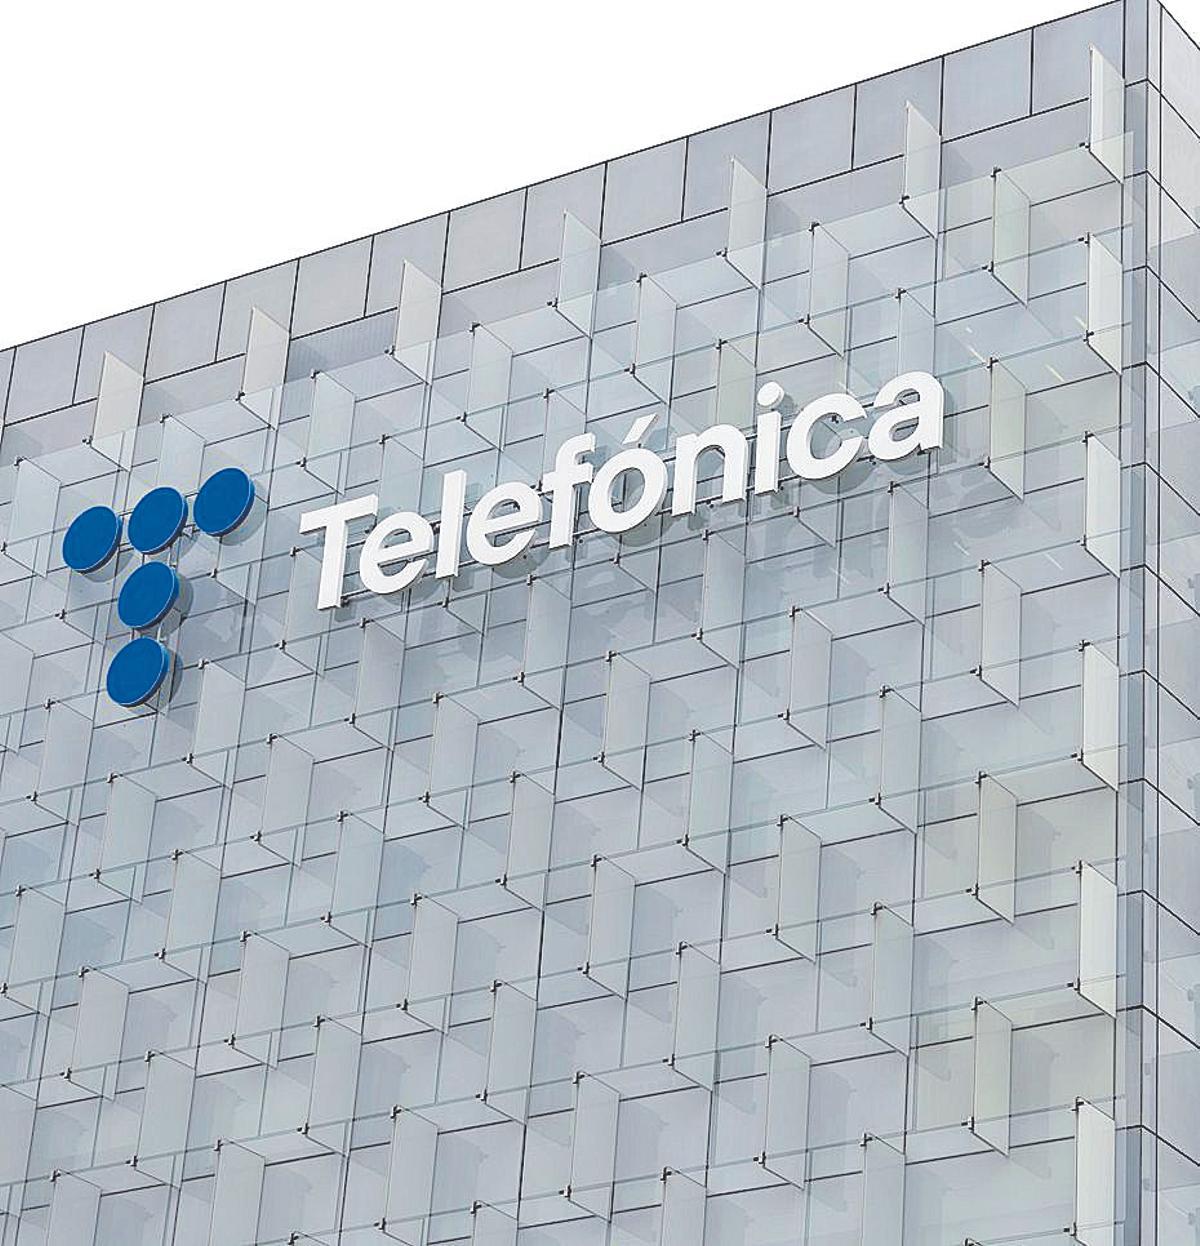 Vista de la sede de Telefónica en Madrid.